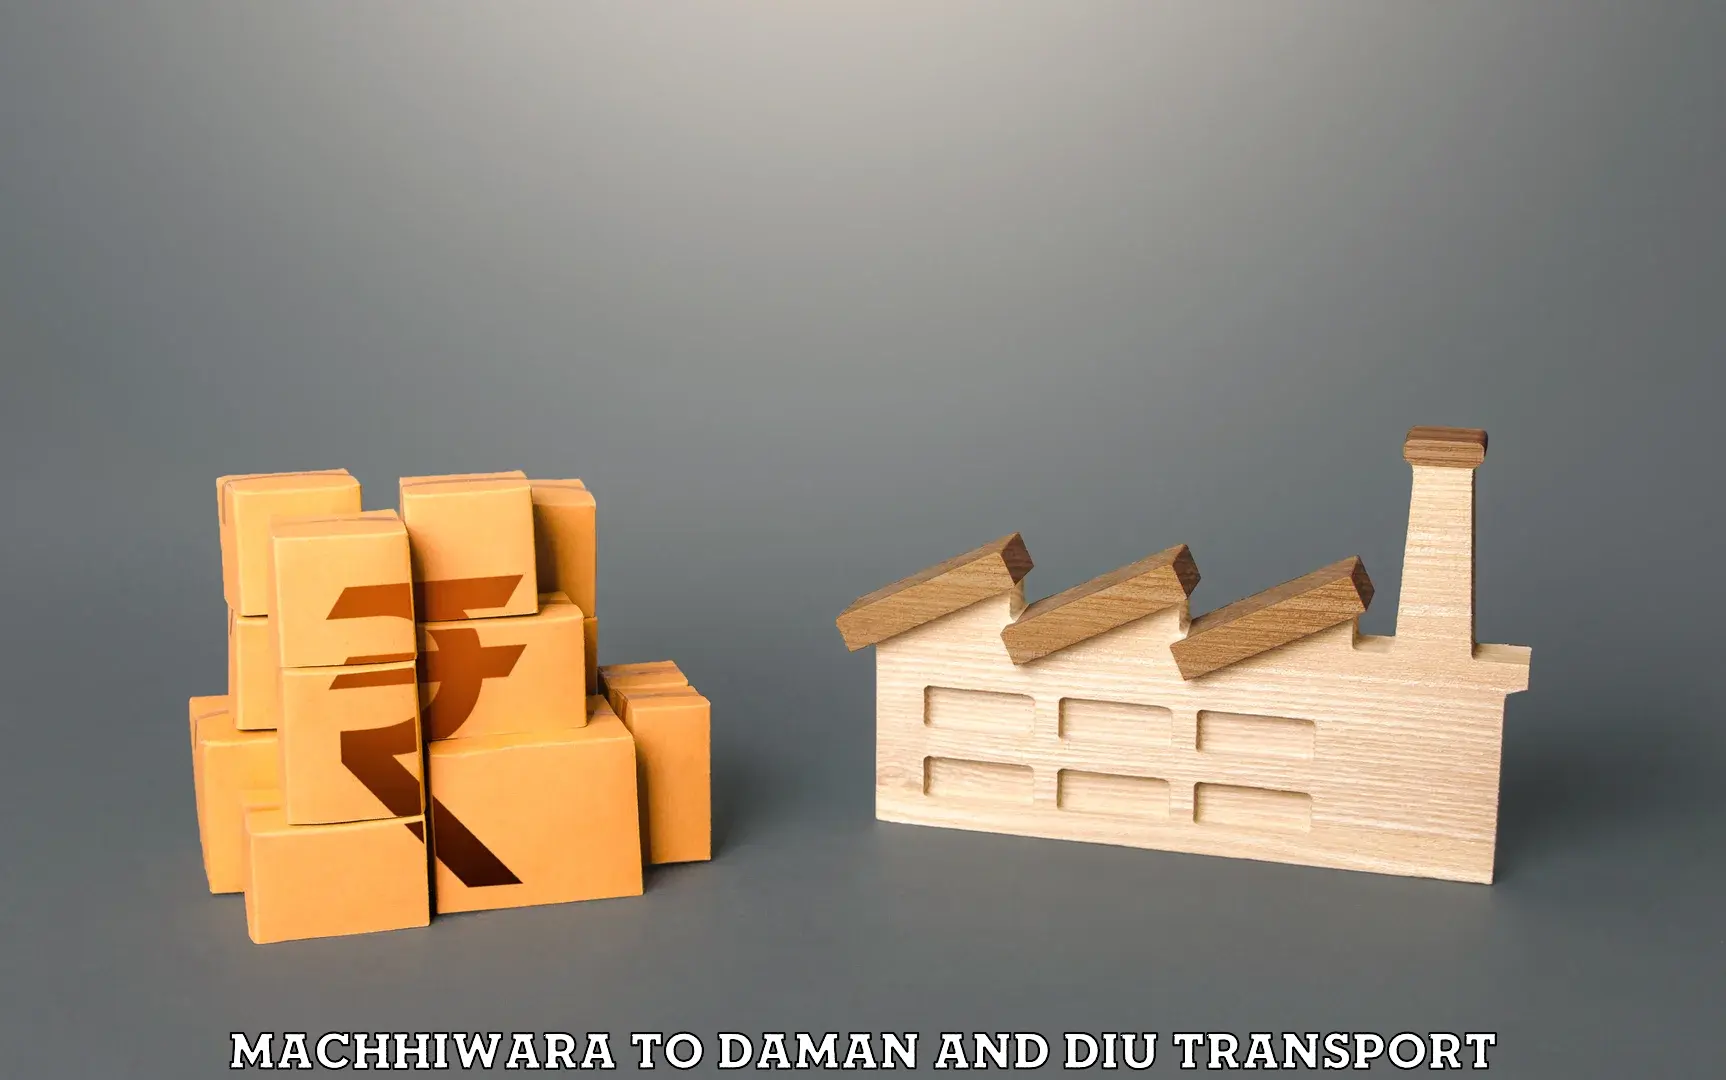 Commercial transport service Machhiwara to Daman